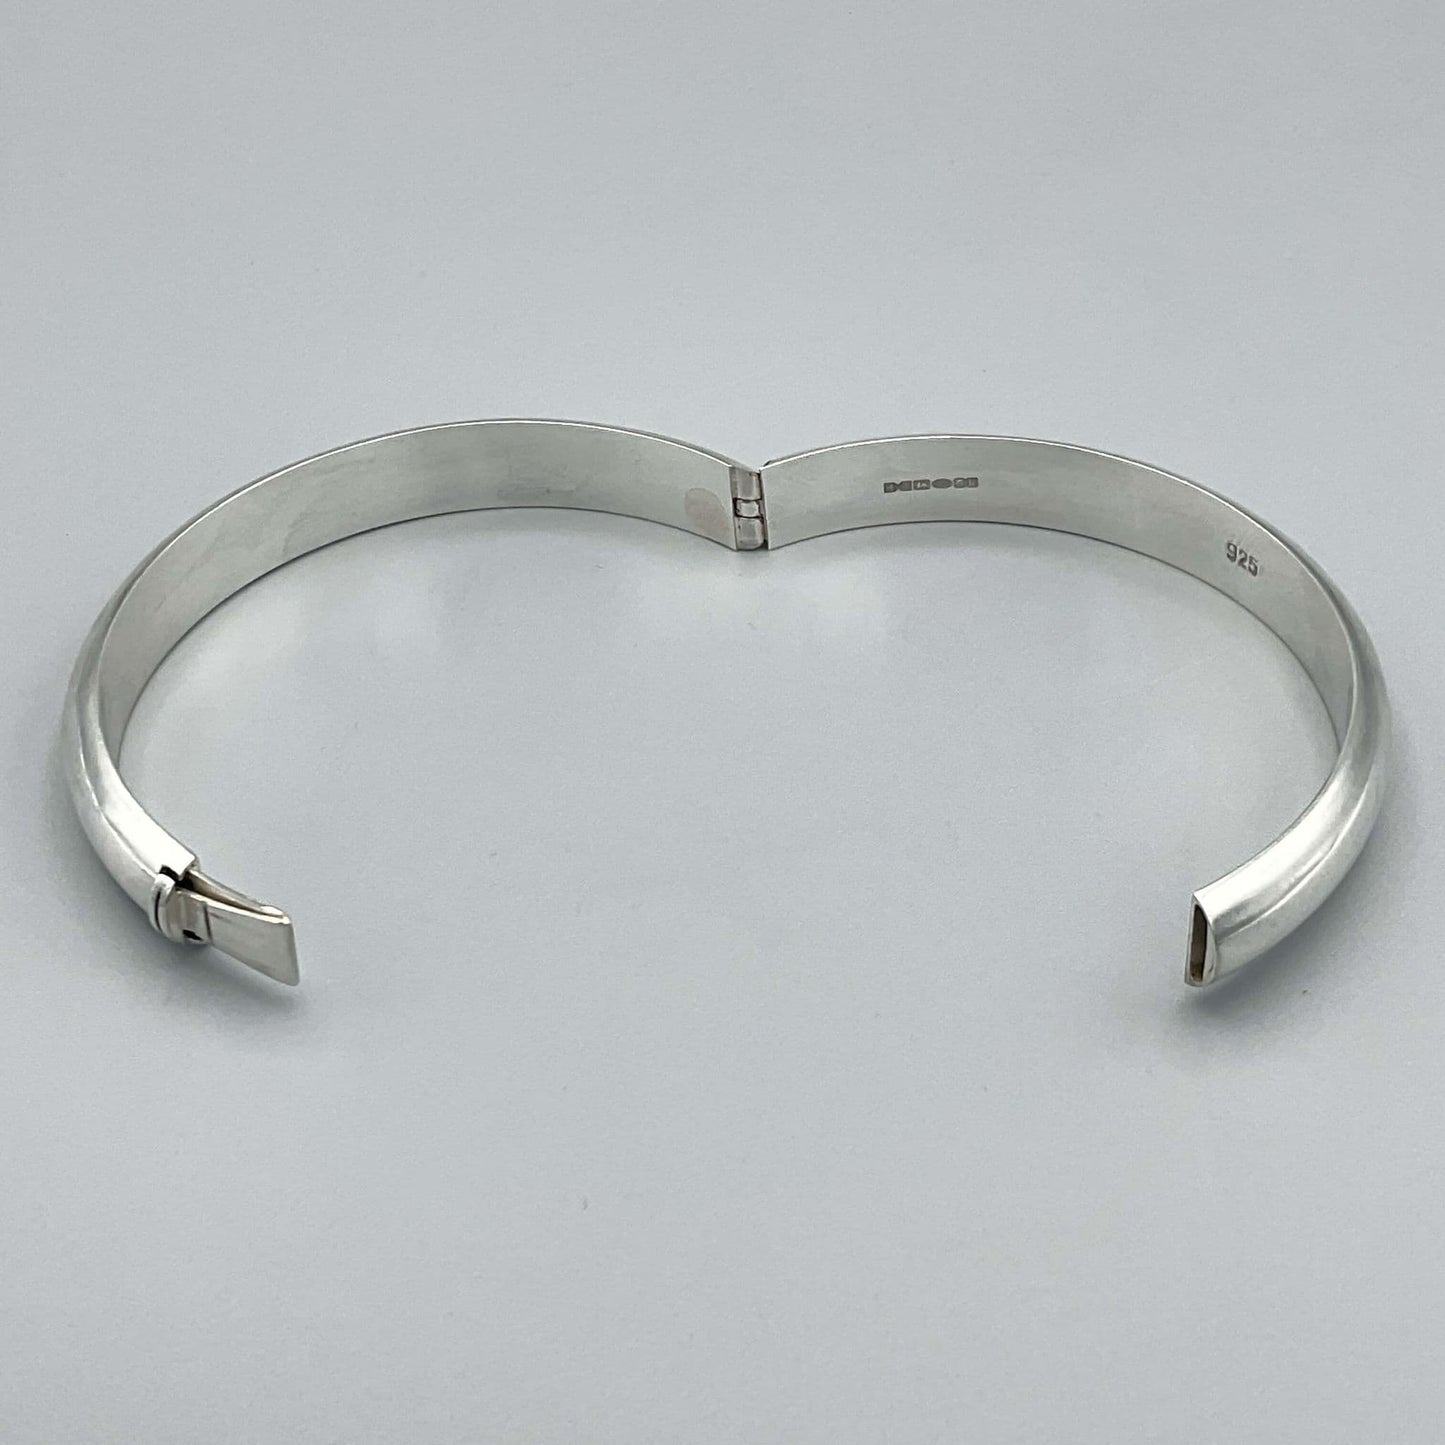 Sterling Silver Hinged Bangle Bracelet, 2009 Hallmark